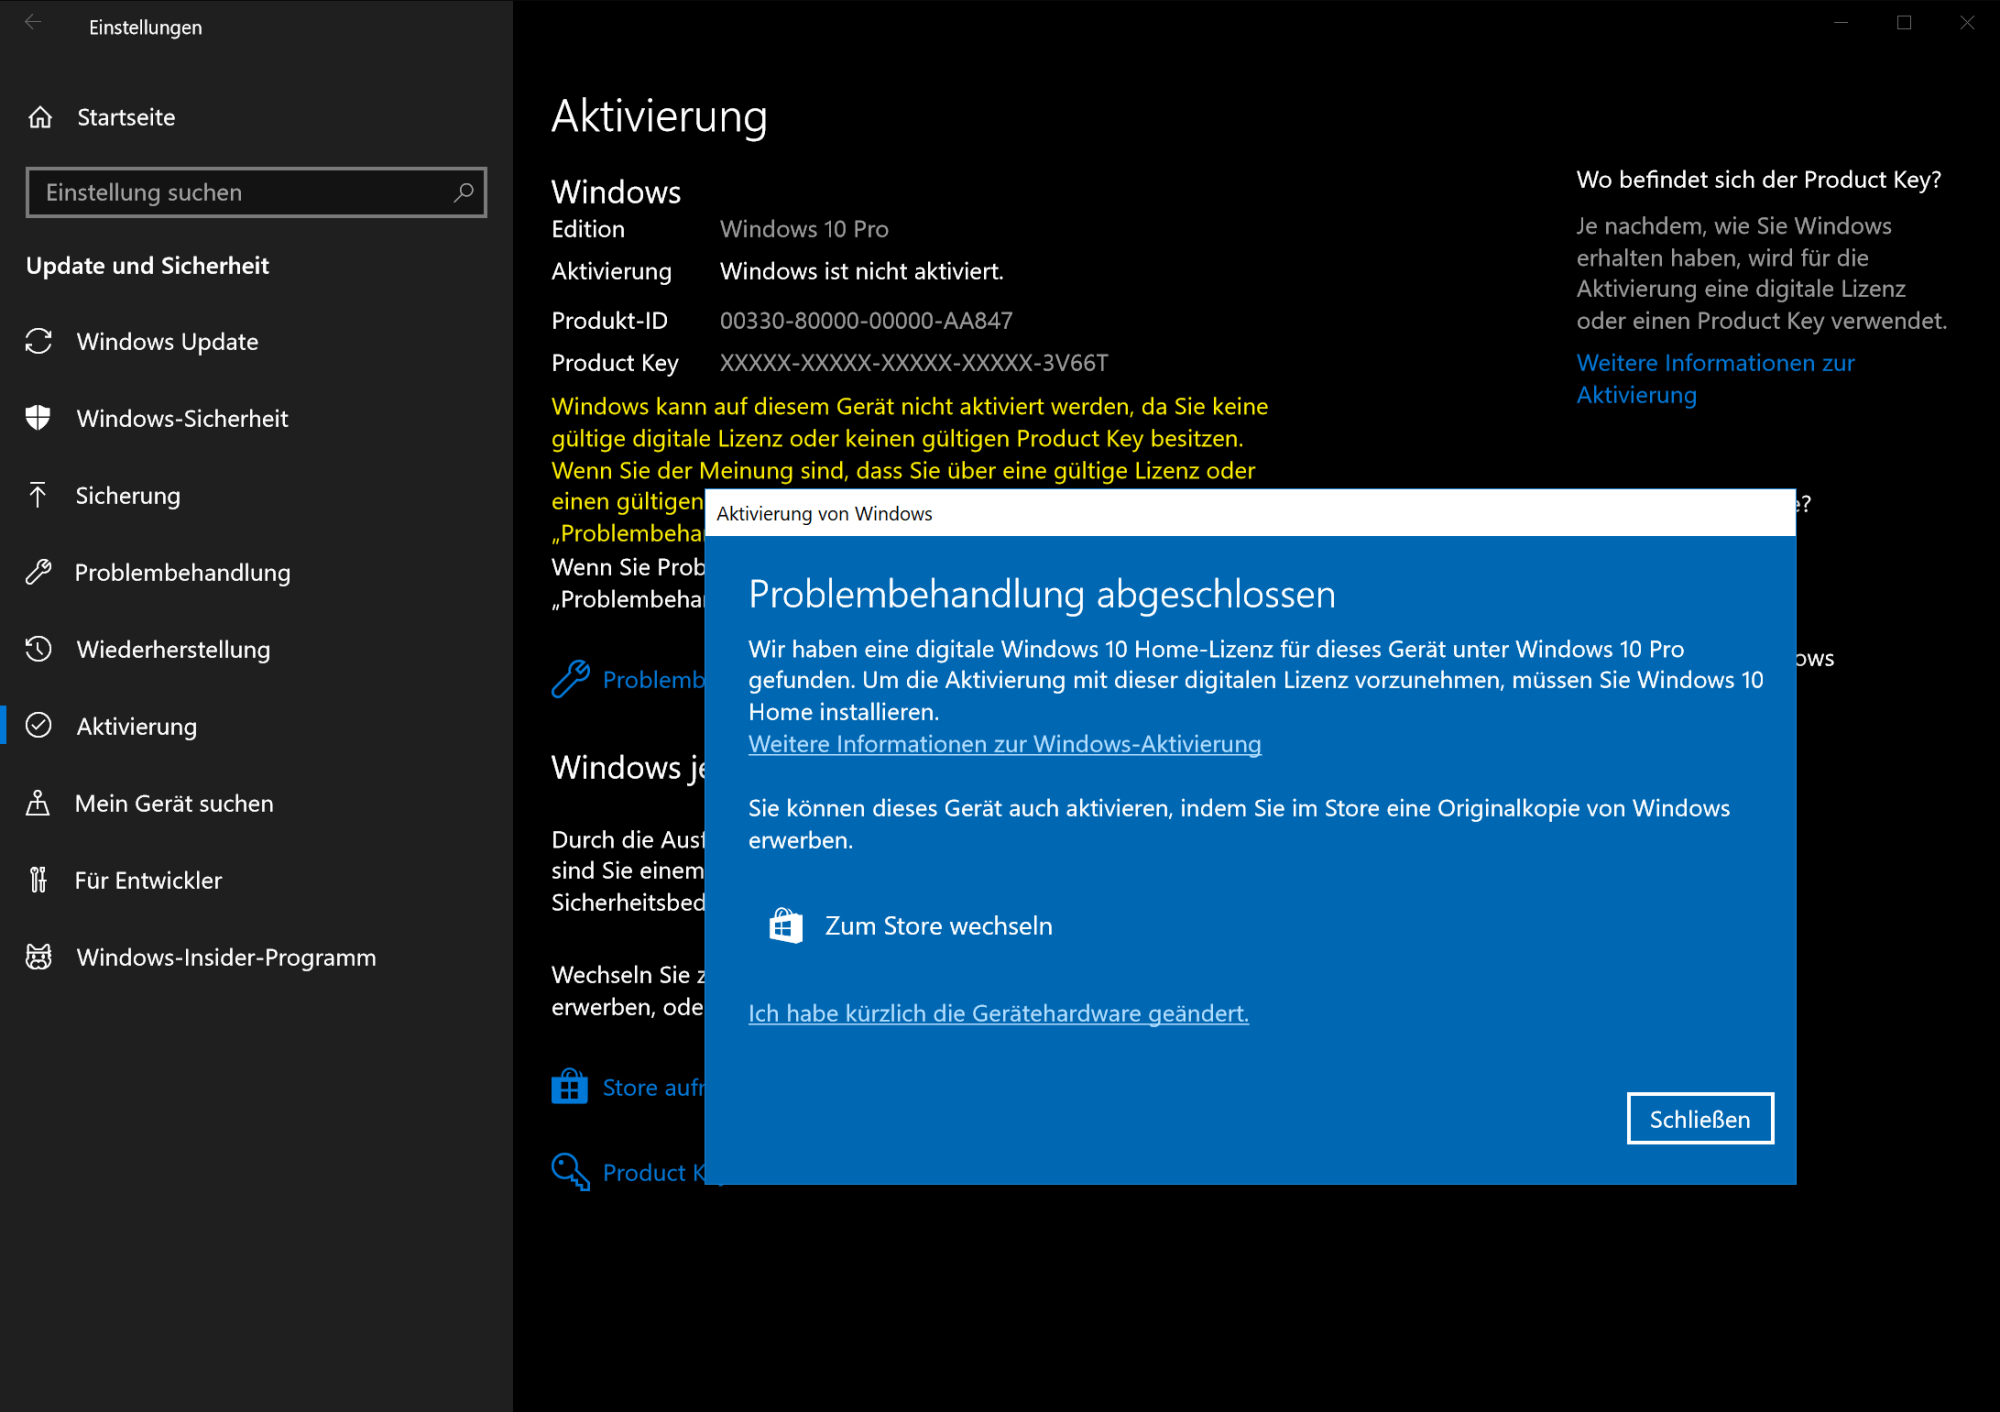 Windows 10 Pro: Aktivierung digitaler Lizenzen gestört | heise online